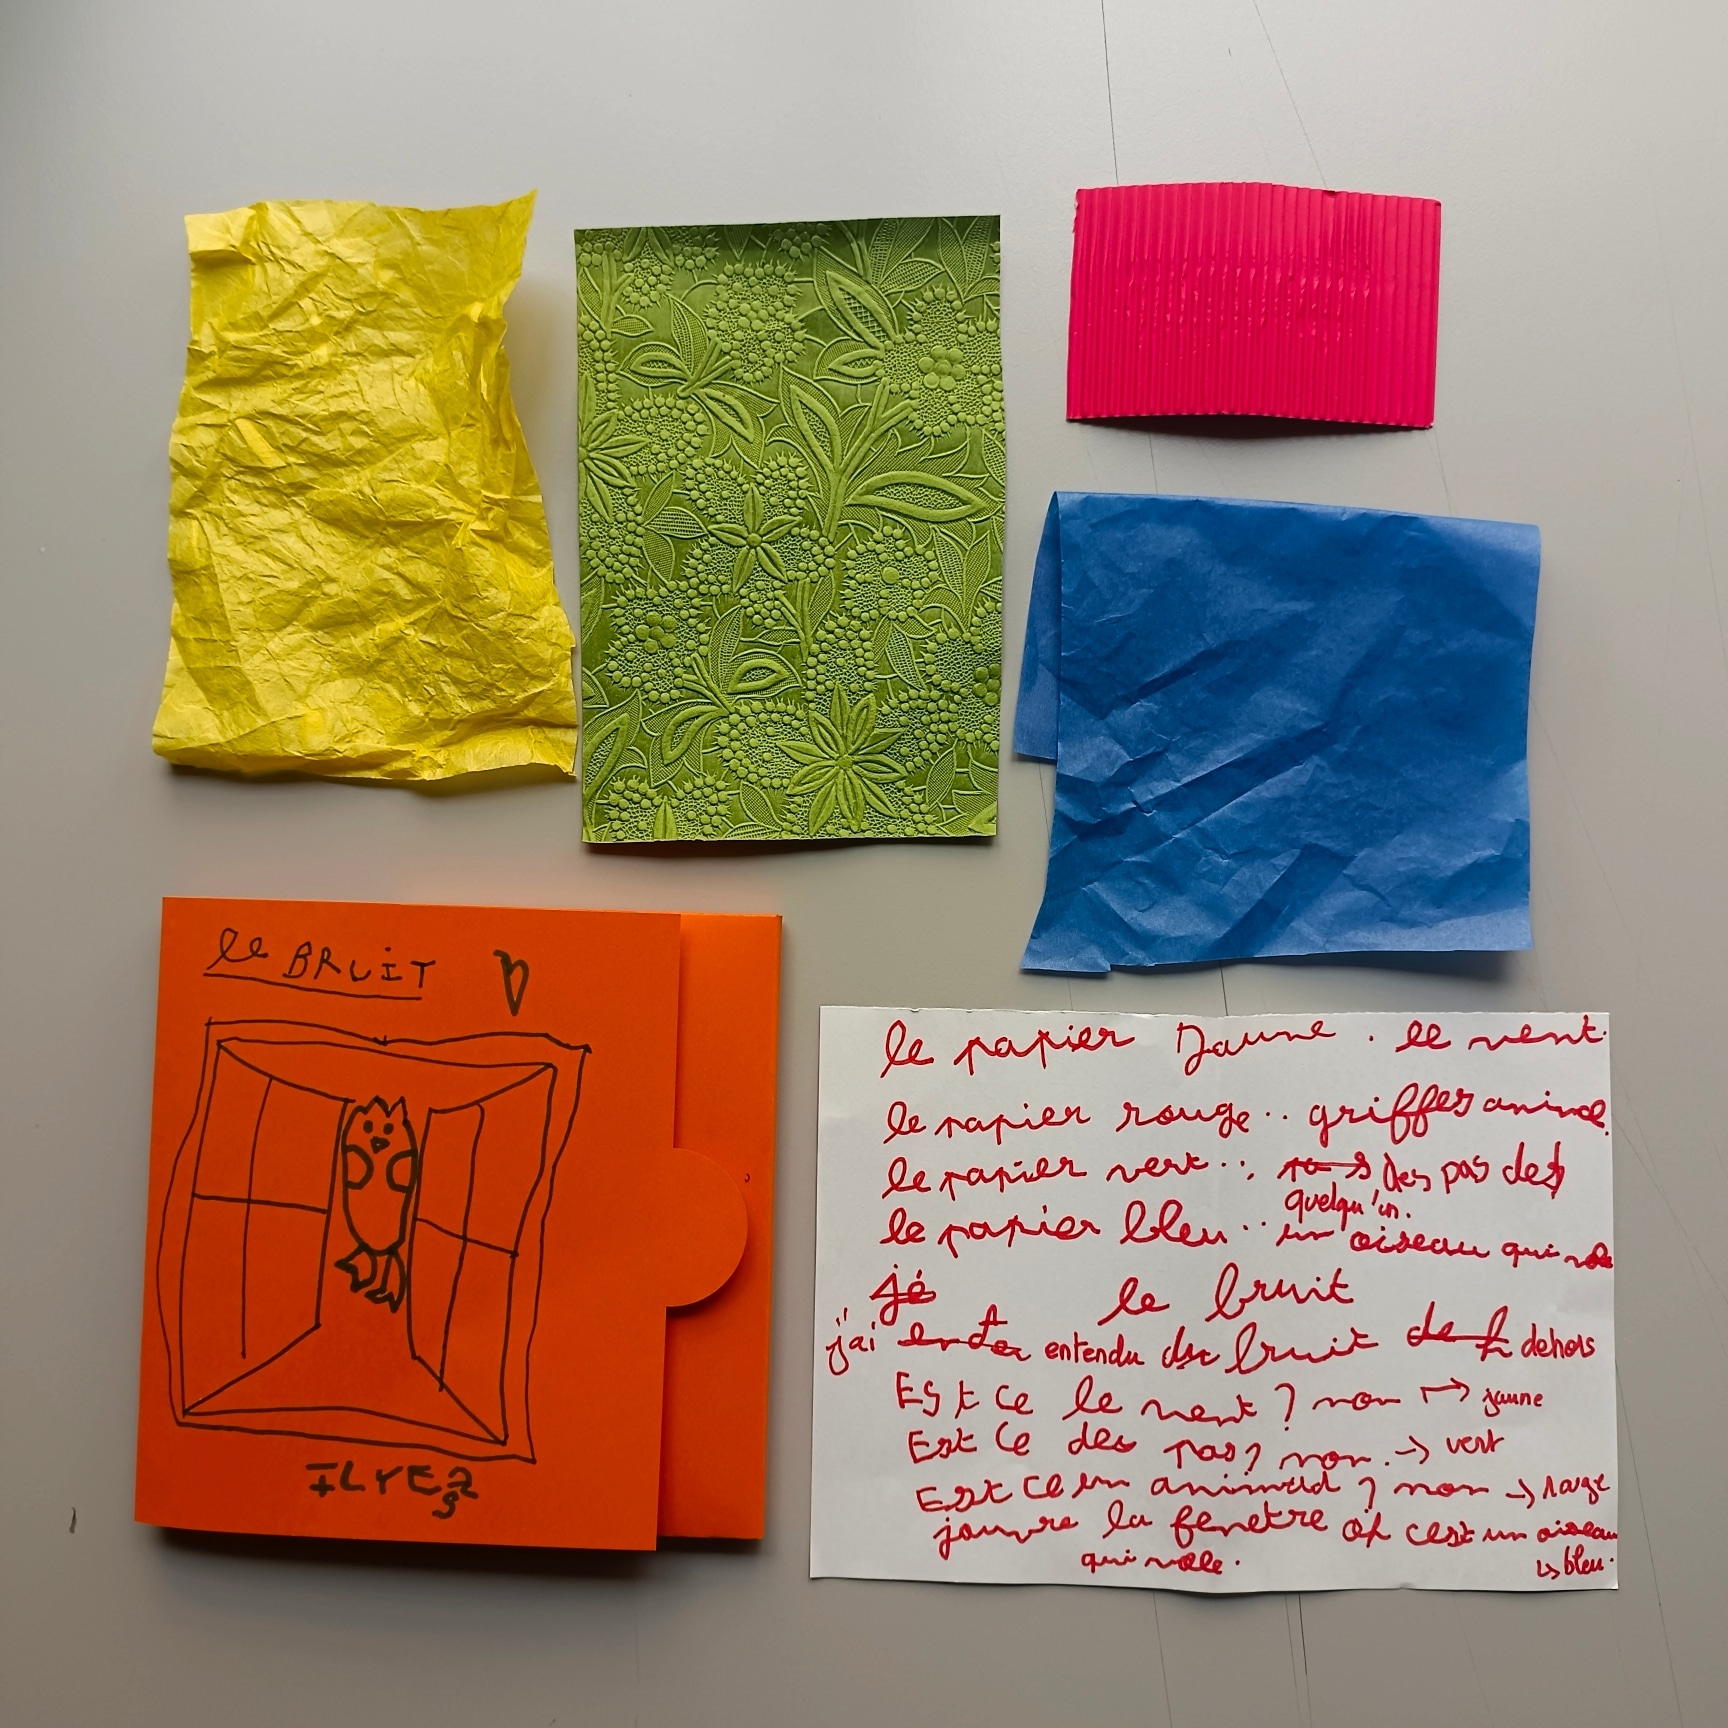 plusieurs papiers aux textures différentes sur une table et à côté, un enfant a écrit "papier jaune : le vent" et d'autres notes.